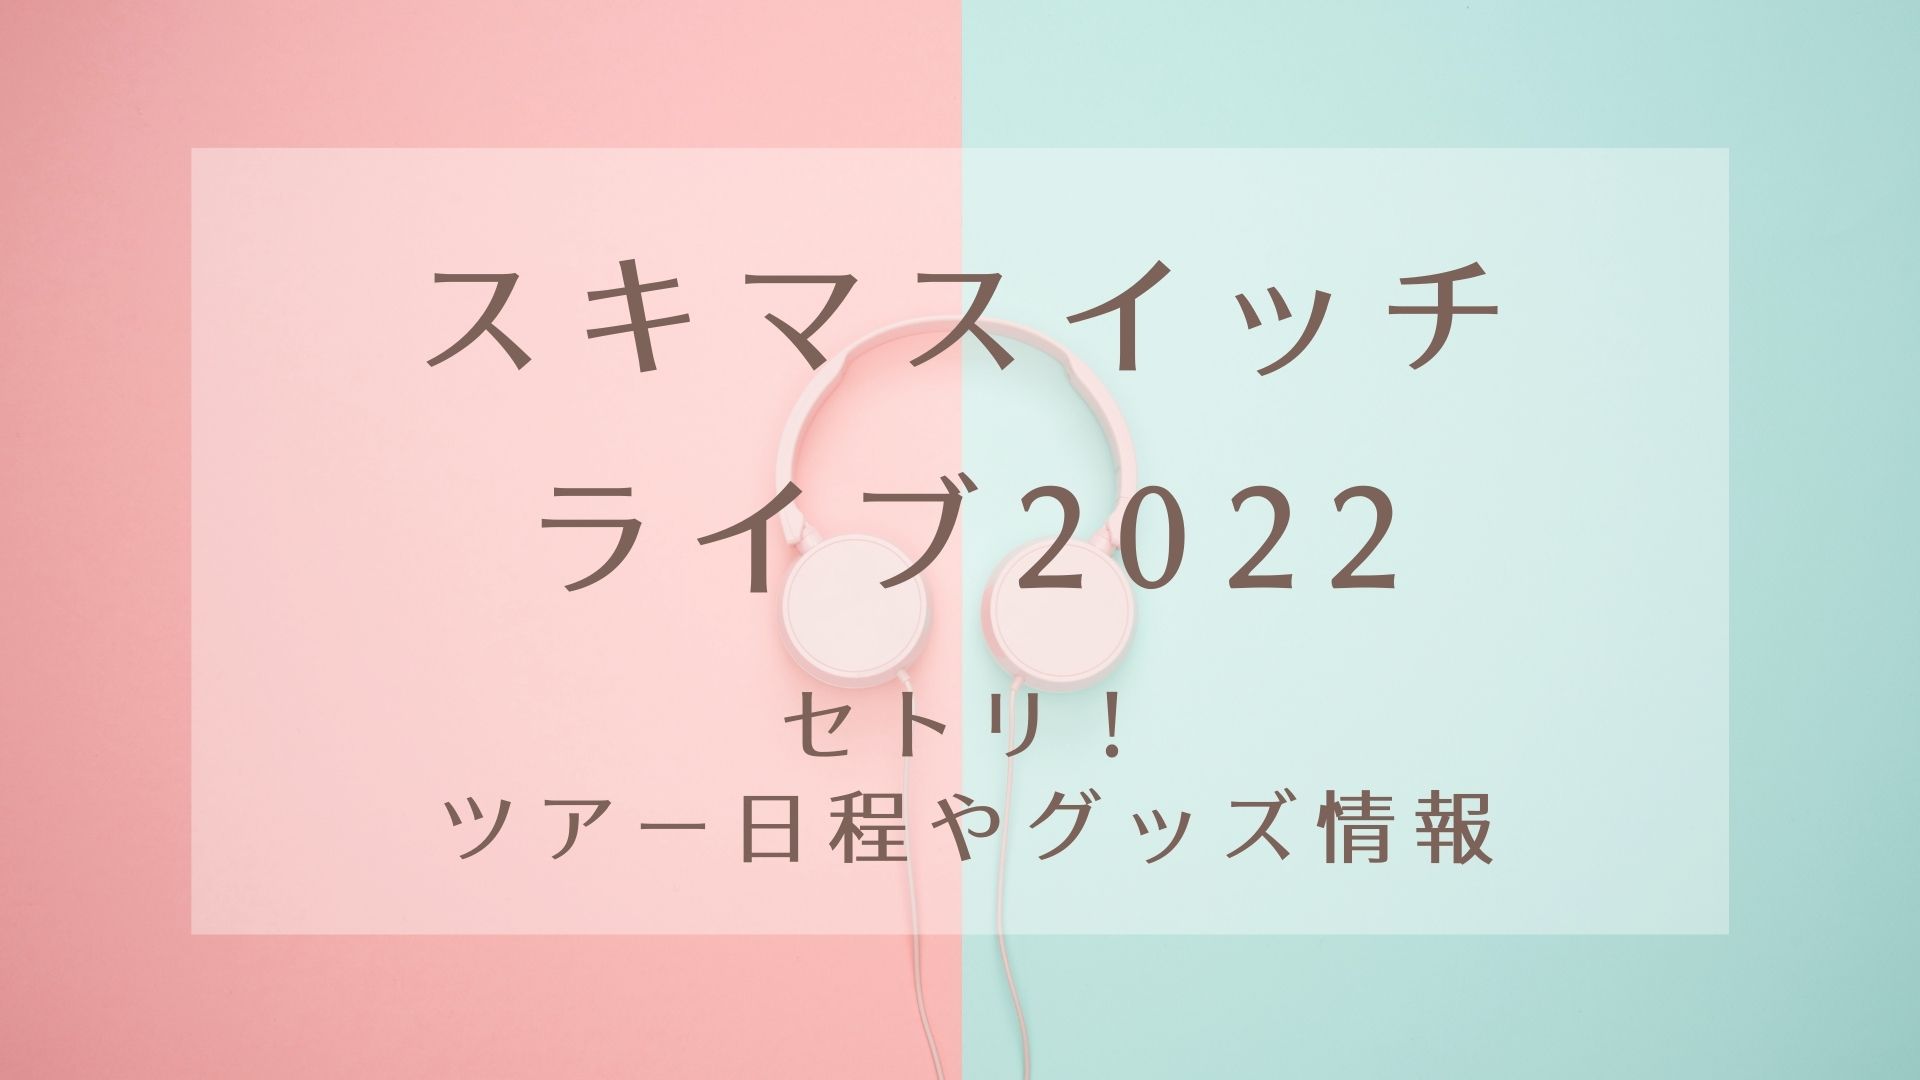 スキマスイッチ TOUR 2022 